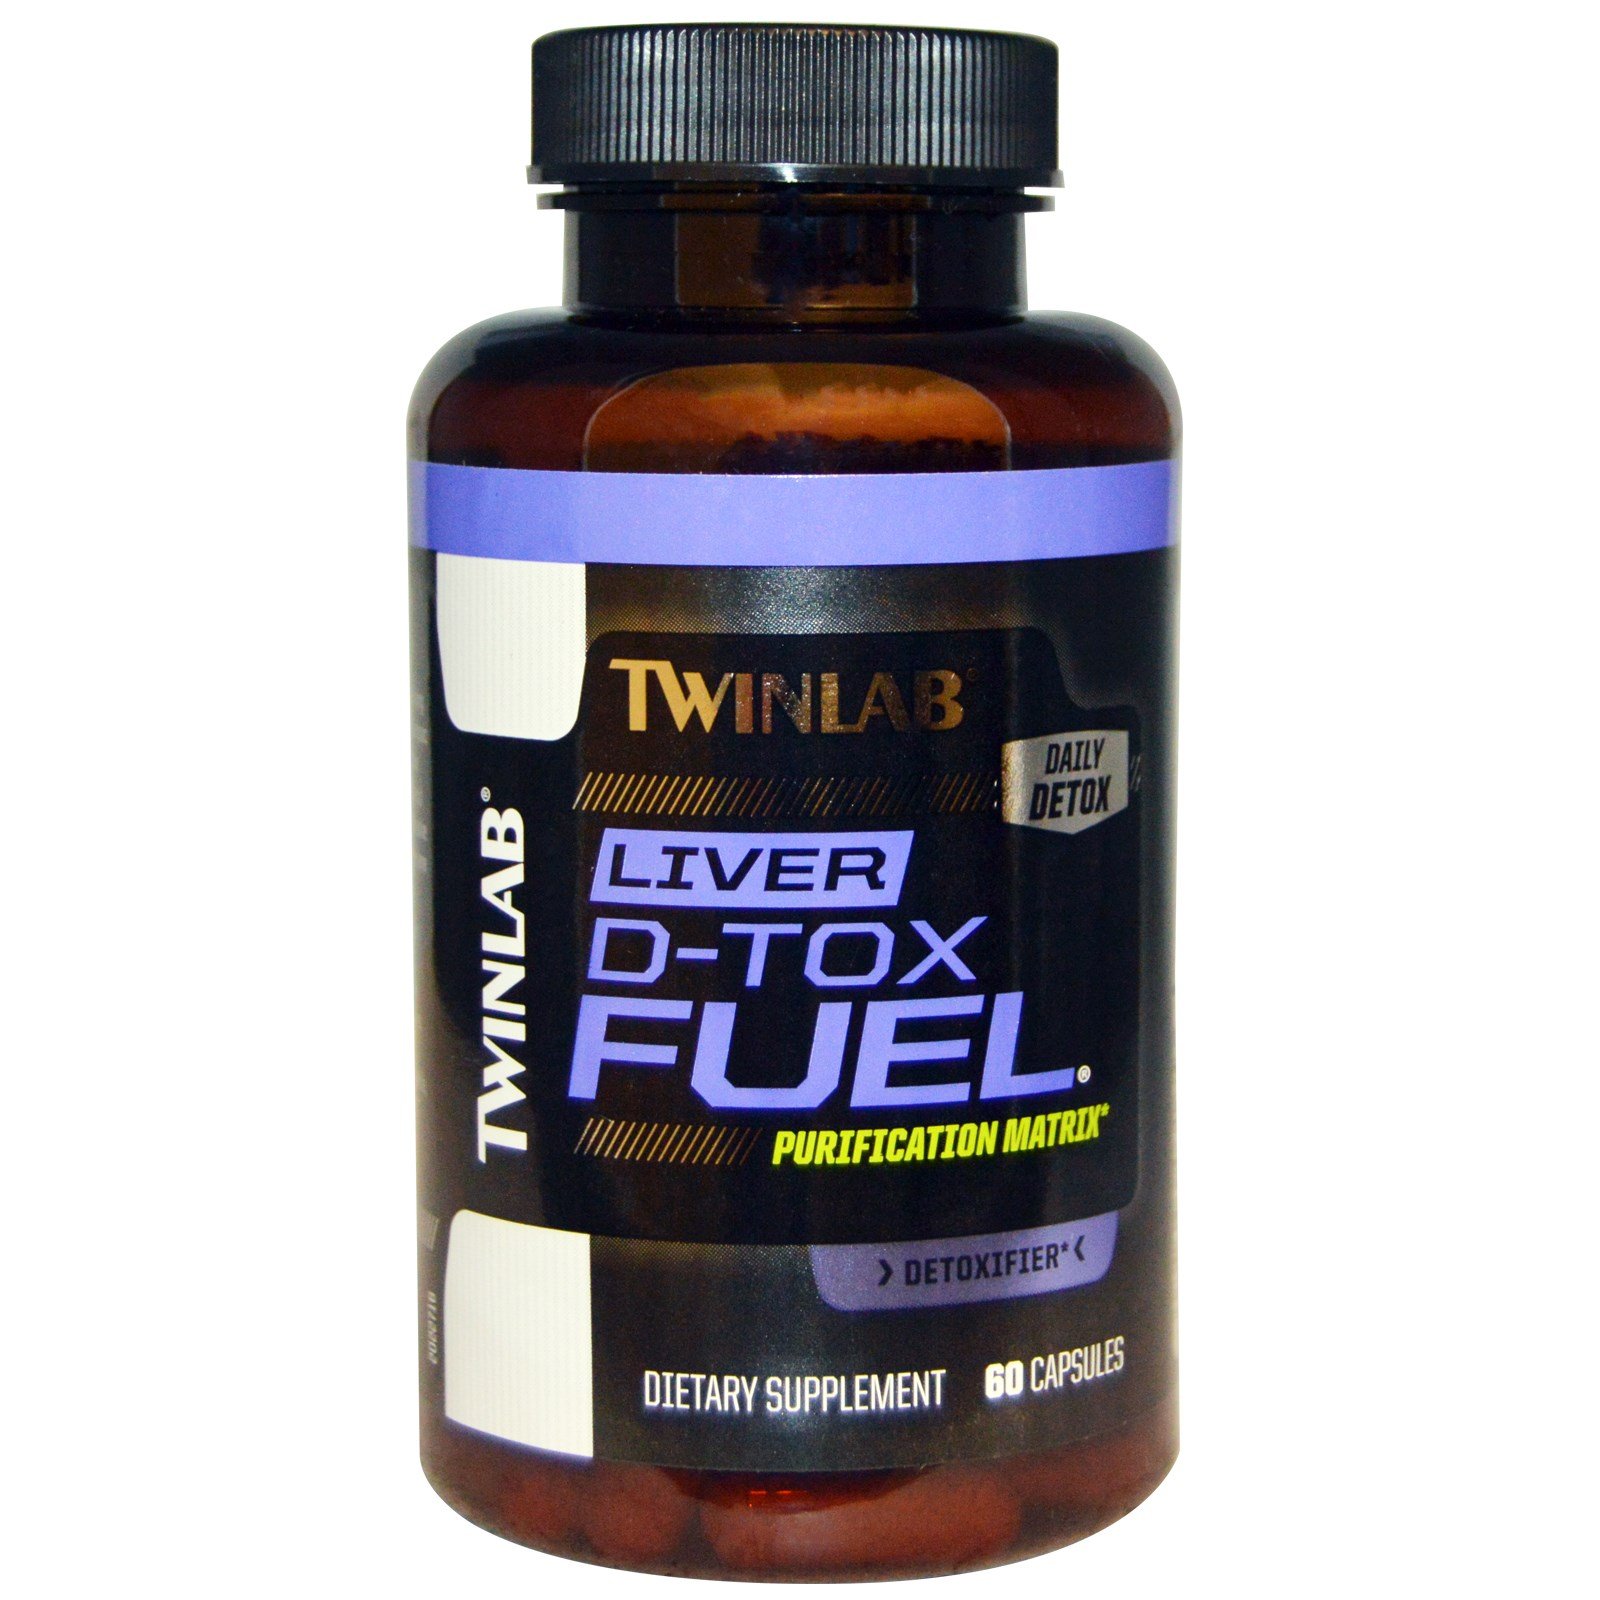 Liver D-Tox Fuel, 60 pcs, Twinlab. Special supplements. 